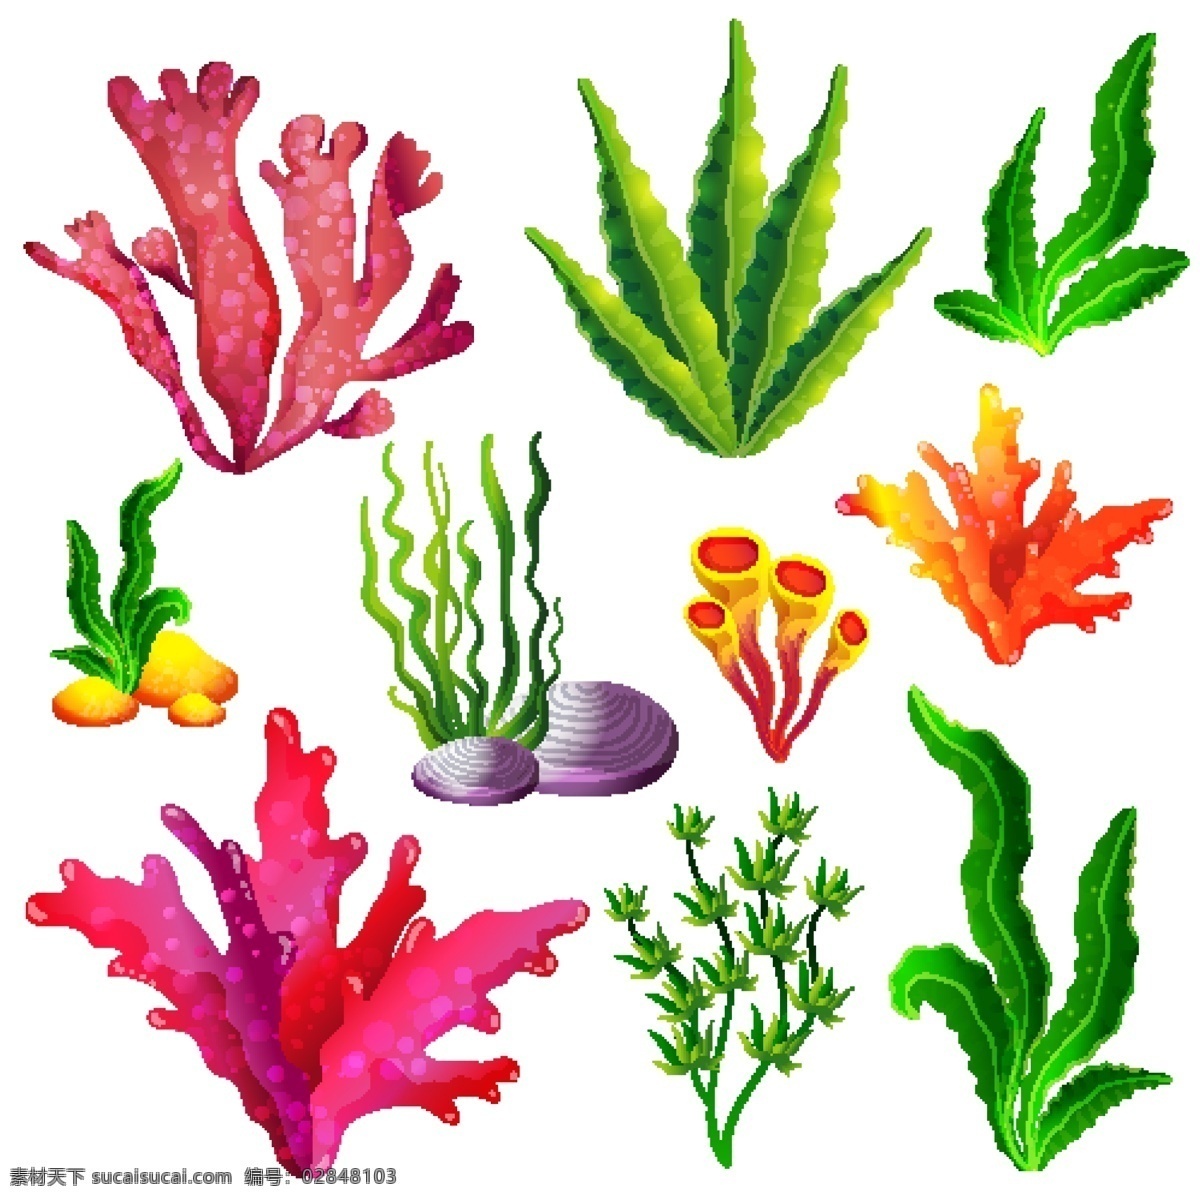 水草 珊瑚 时尚 可爱卡通 矢量素材 手绘 海洋生物 卡通海洋生物 矢量海洋生物 卡通海藻 卡通珊瑚 海底生物 海底世界 海底素材 大海